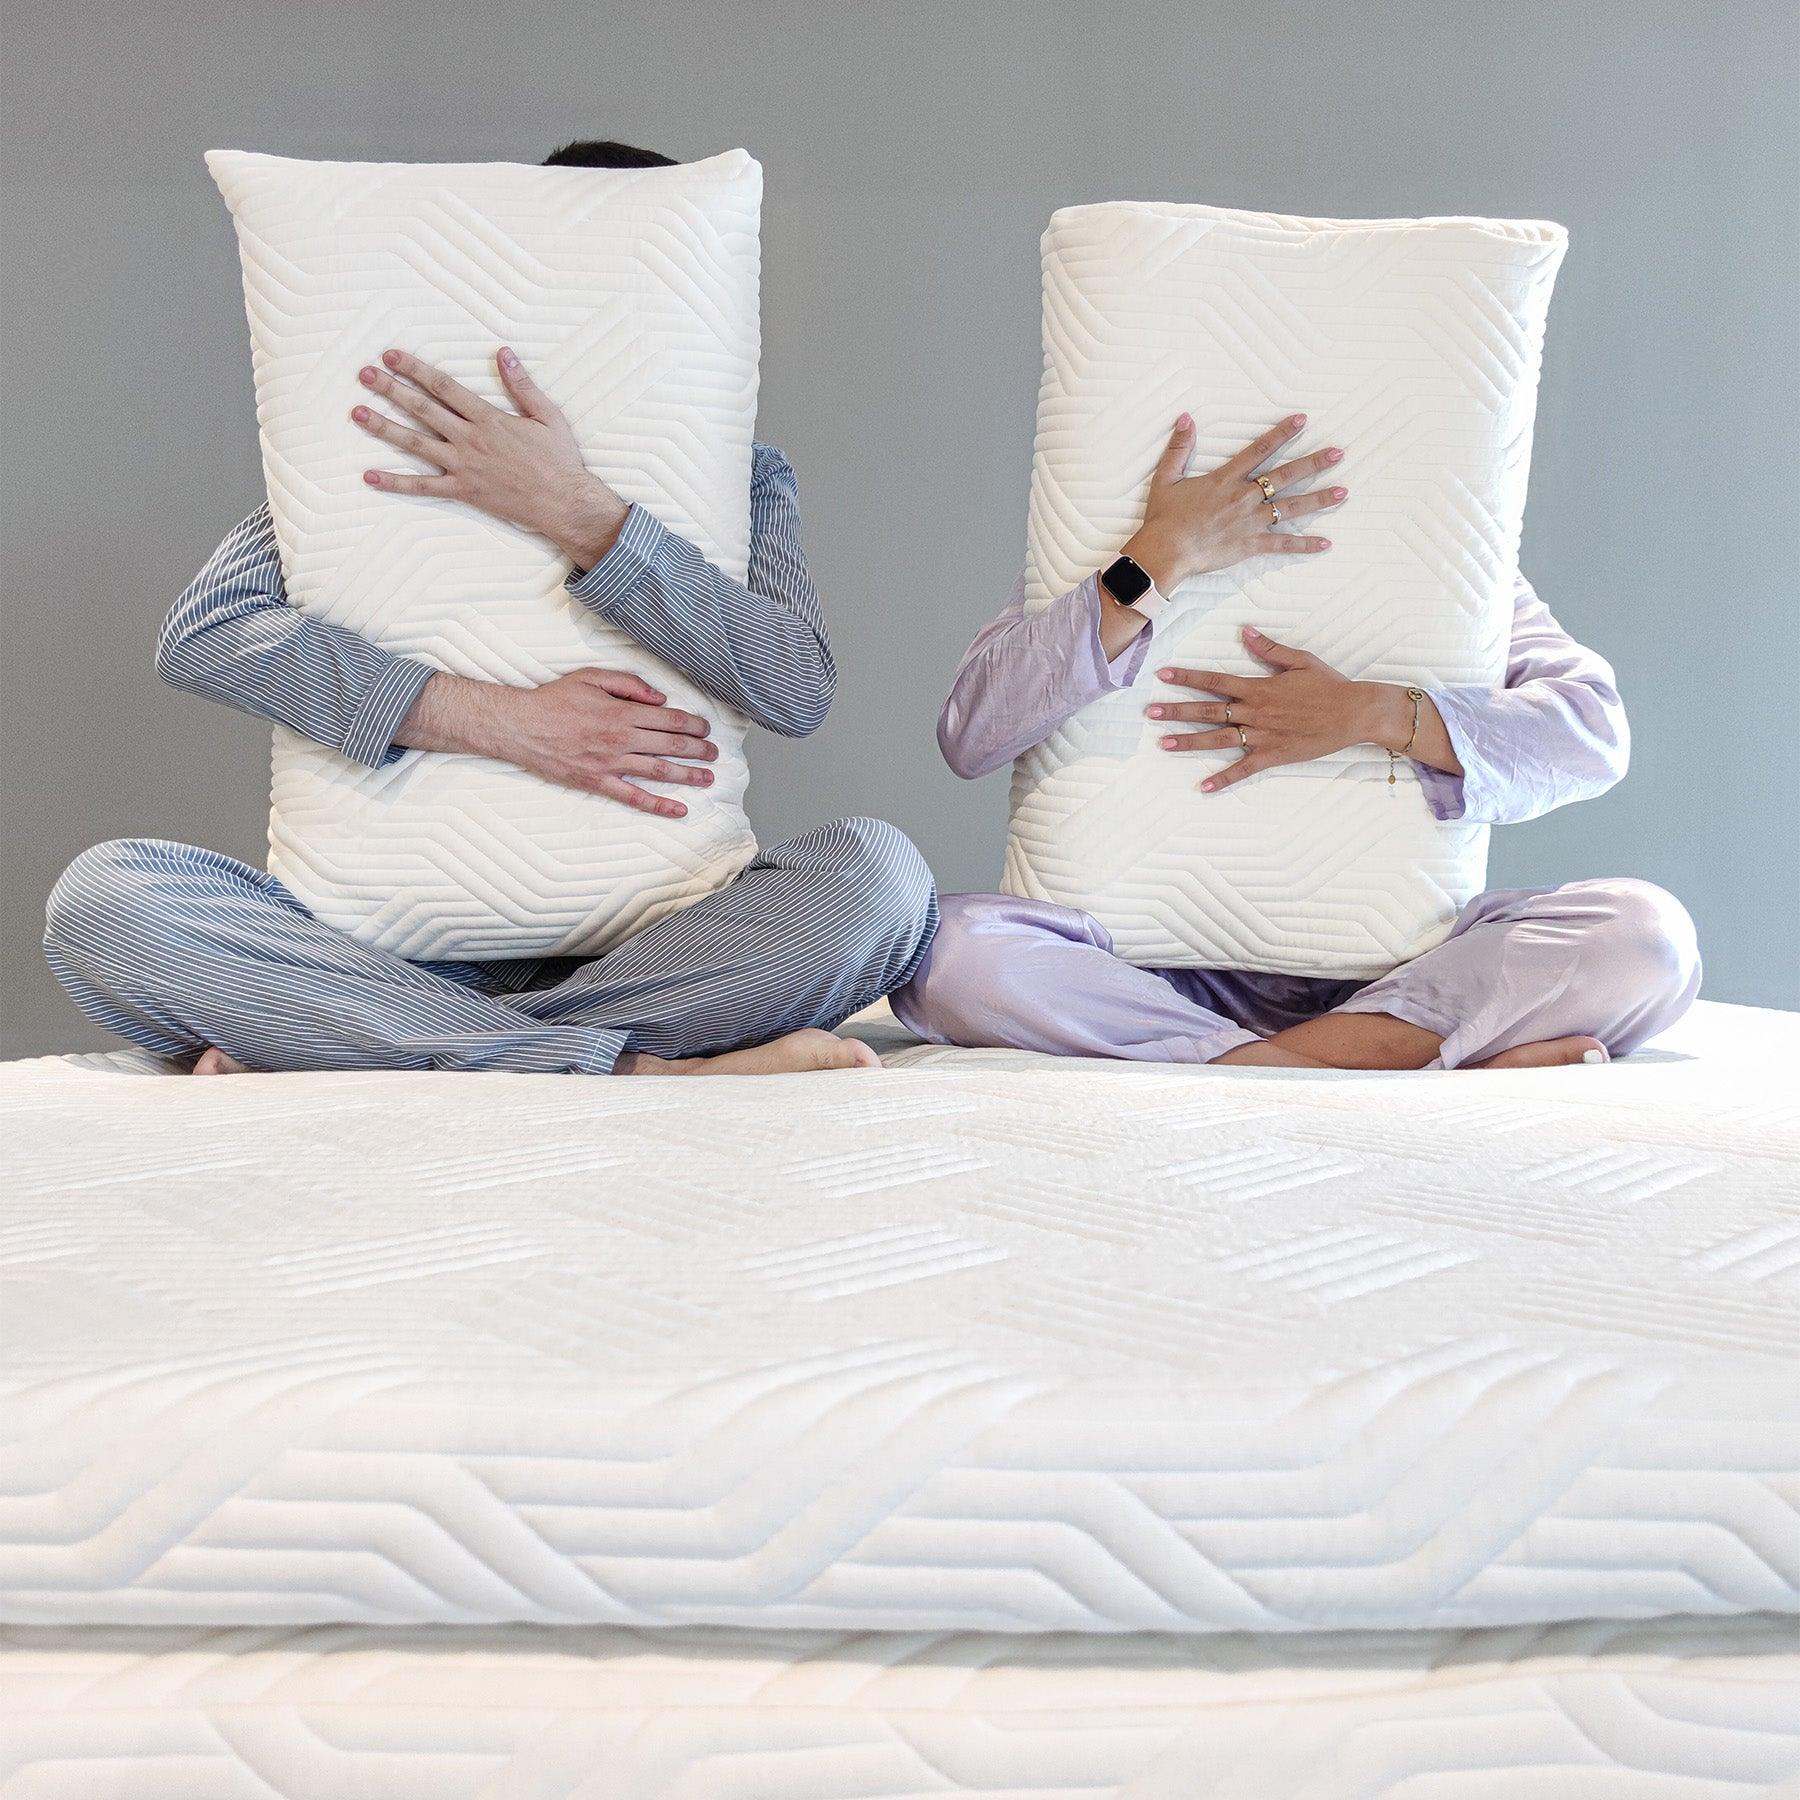 Primo piano del cuscino 100% Watergel Donizetti di Beliamo, evidenziando il design ergonomico e la qualità del tessuto